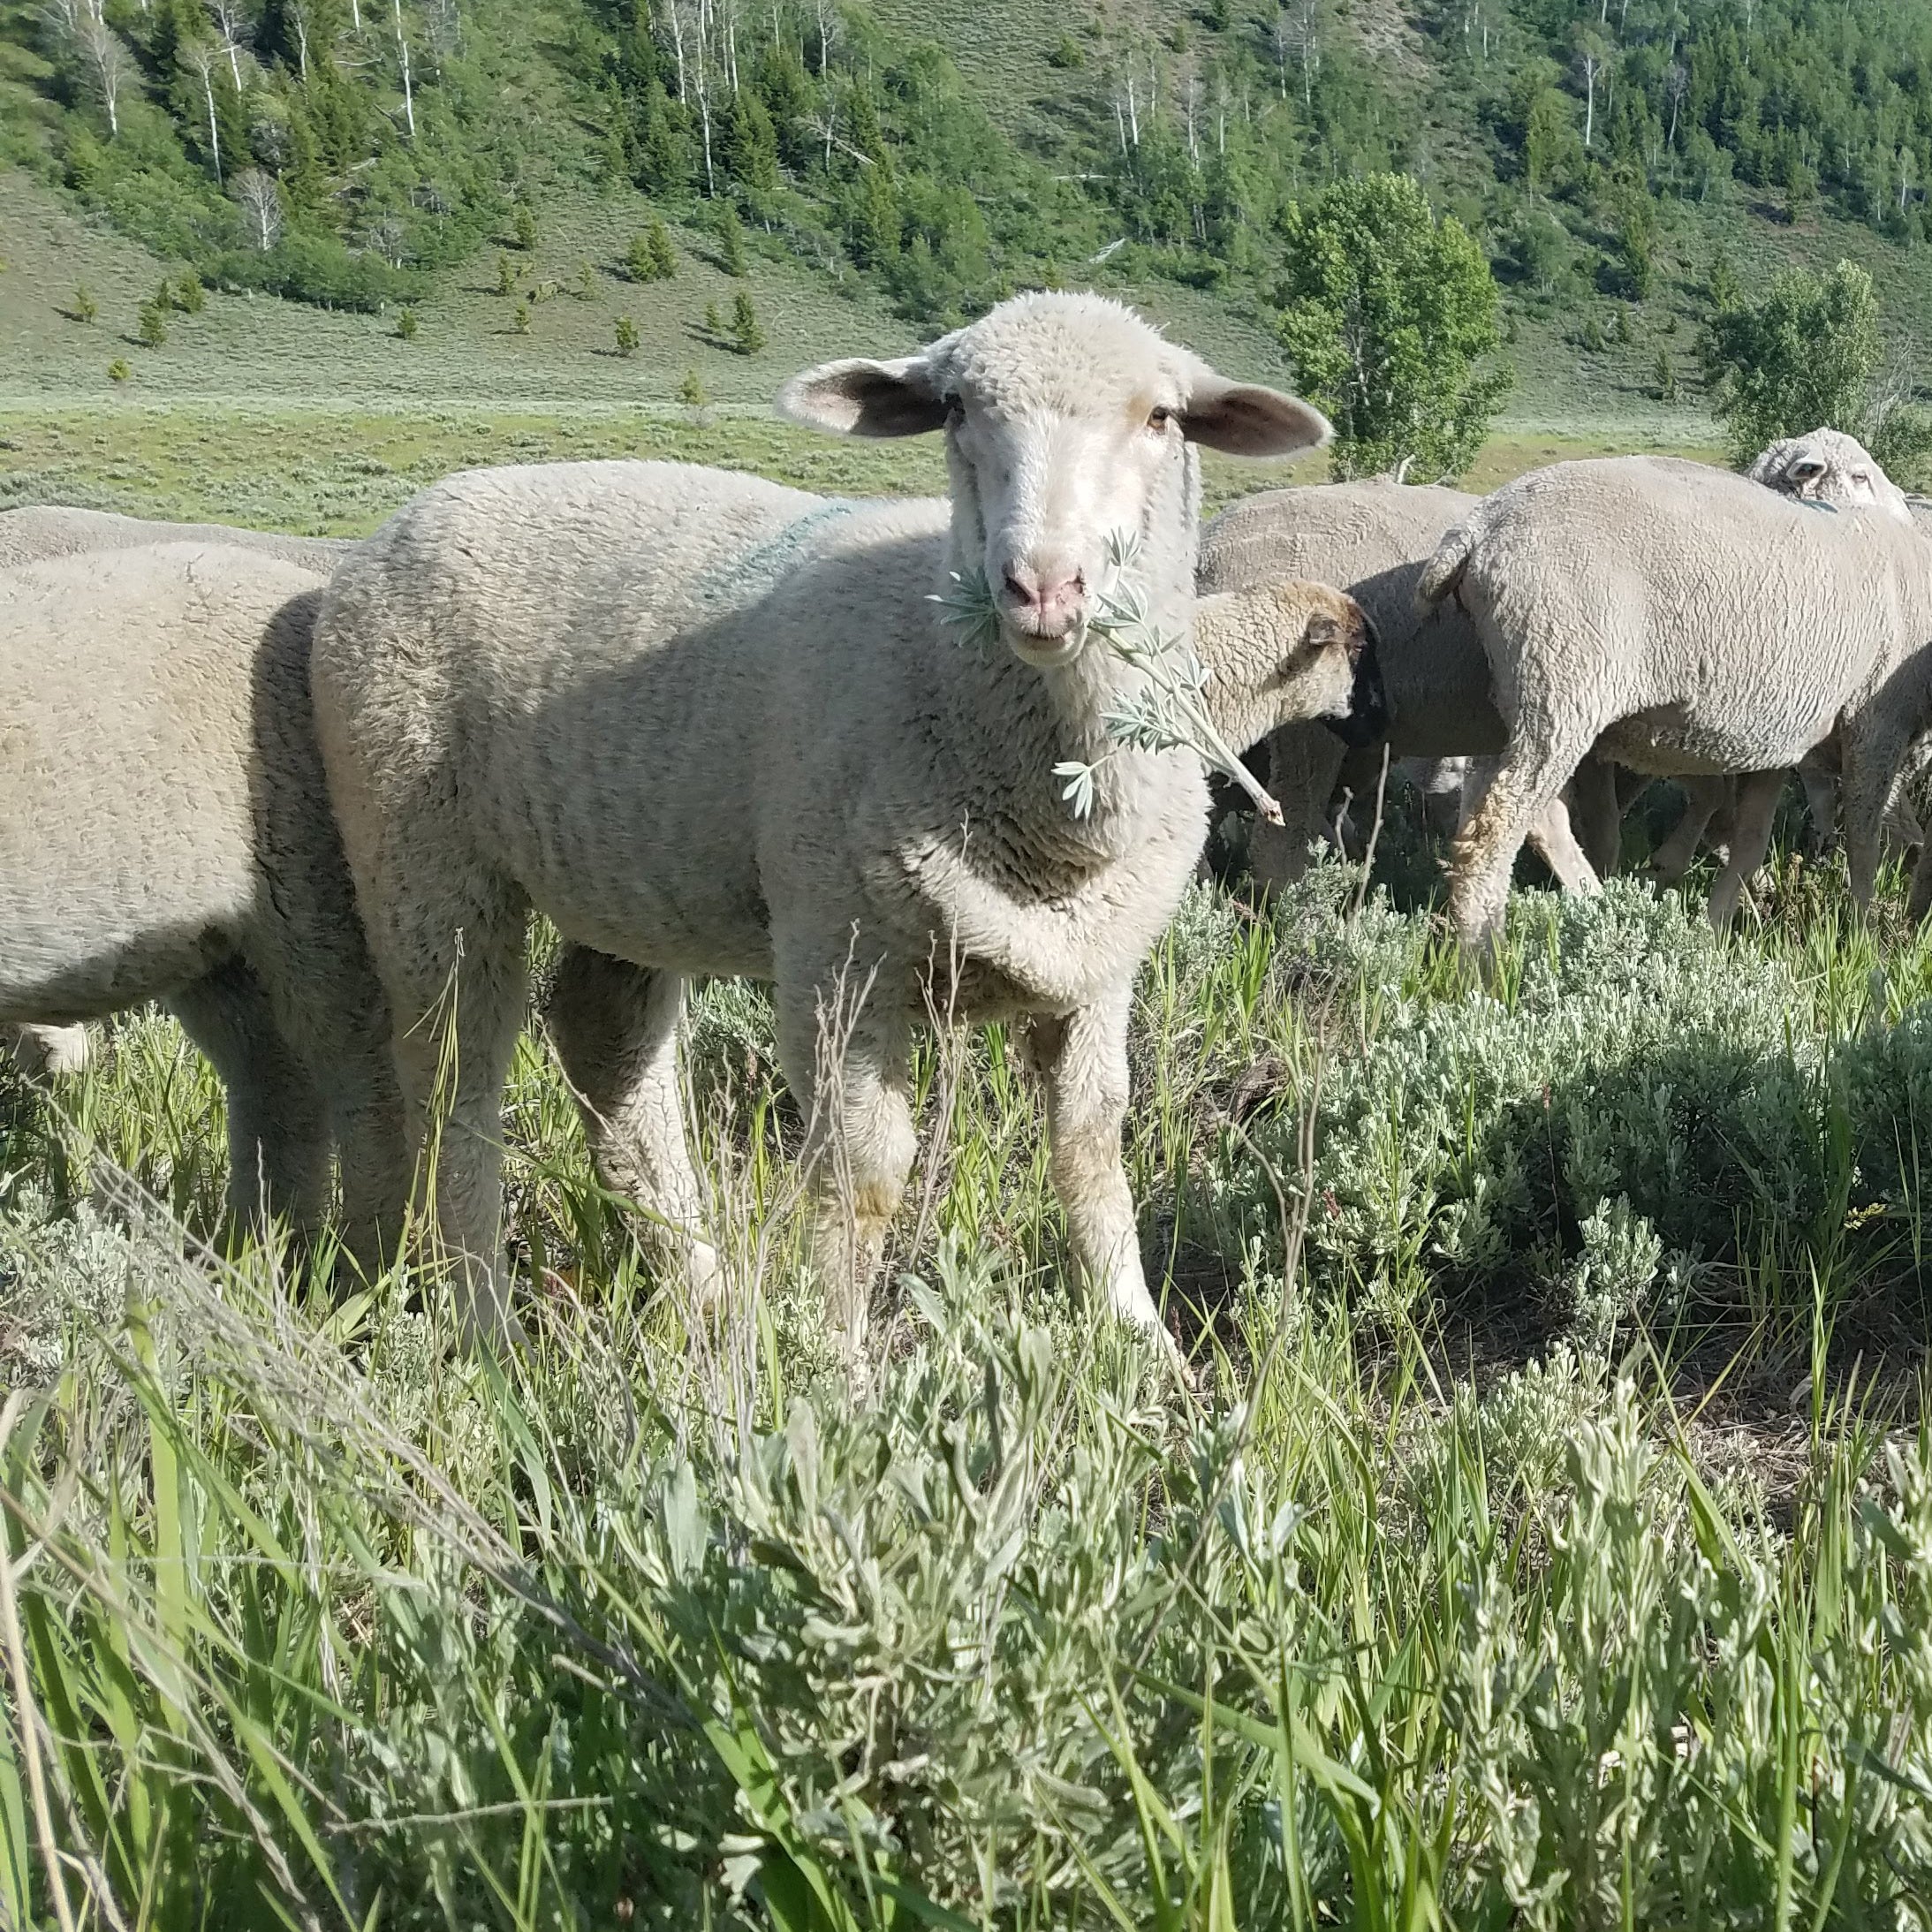 sheep grazing